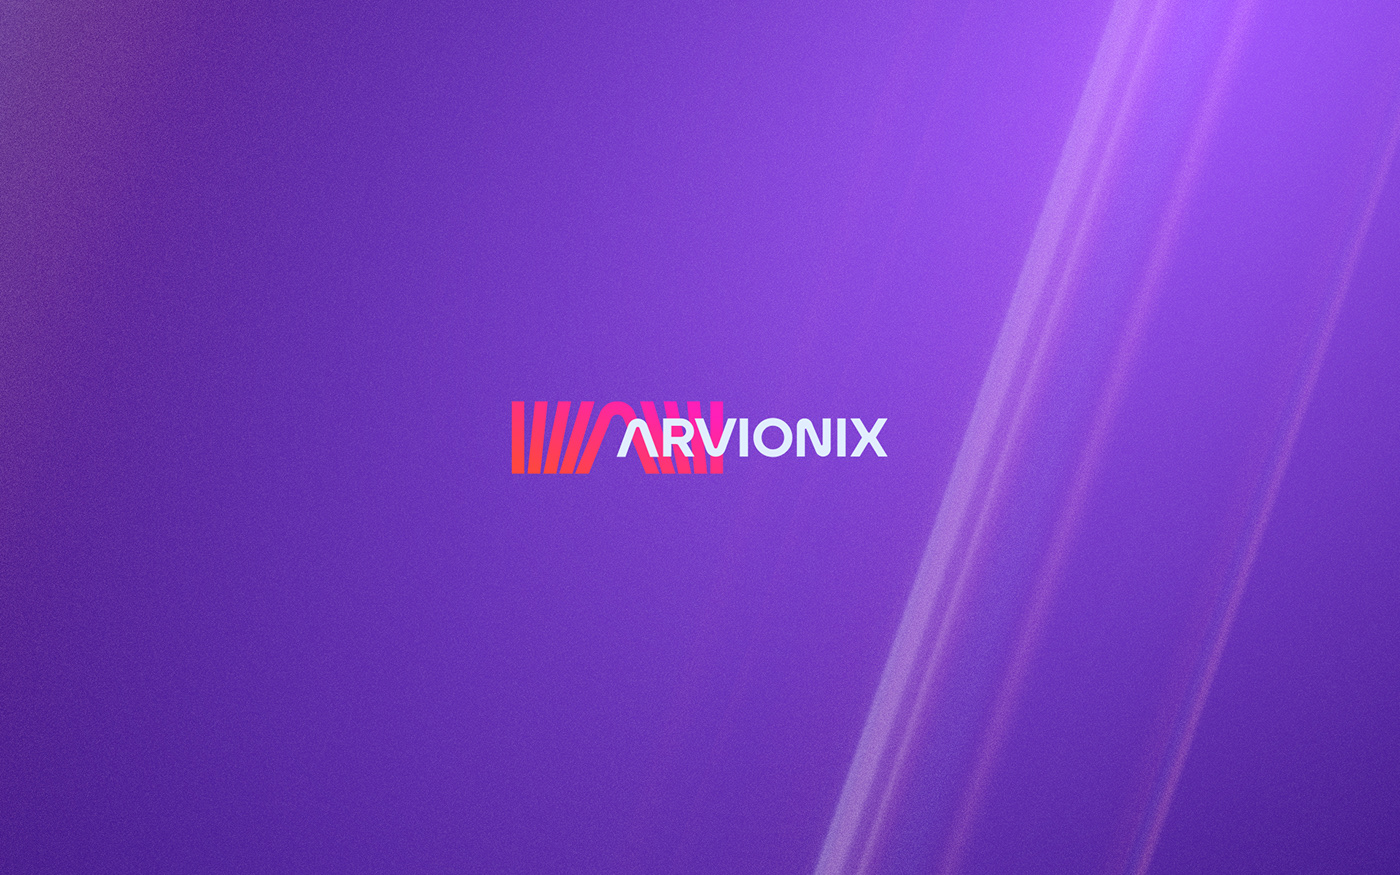 vr/ar company logo design